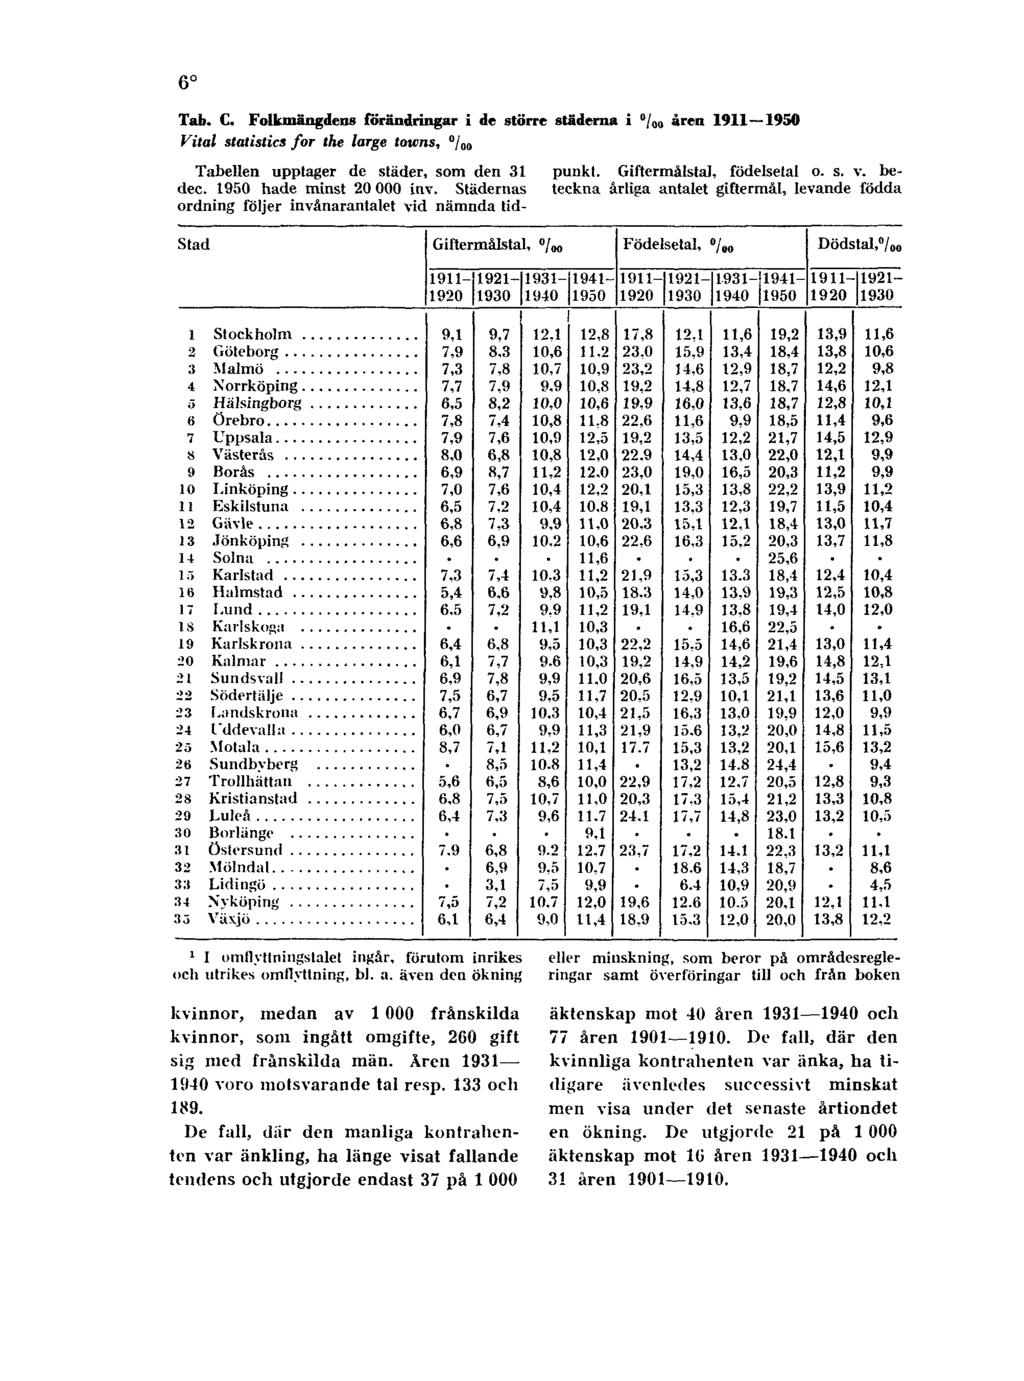 6 Tab. C. Folkmängdens förändringar i de större städerna i åren 1911 1950 Vital statistics for the large towns, Tabellen upptager de städer, som den 31 punkt. Giftermålstal, födelsetal o. s. v. bedec.